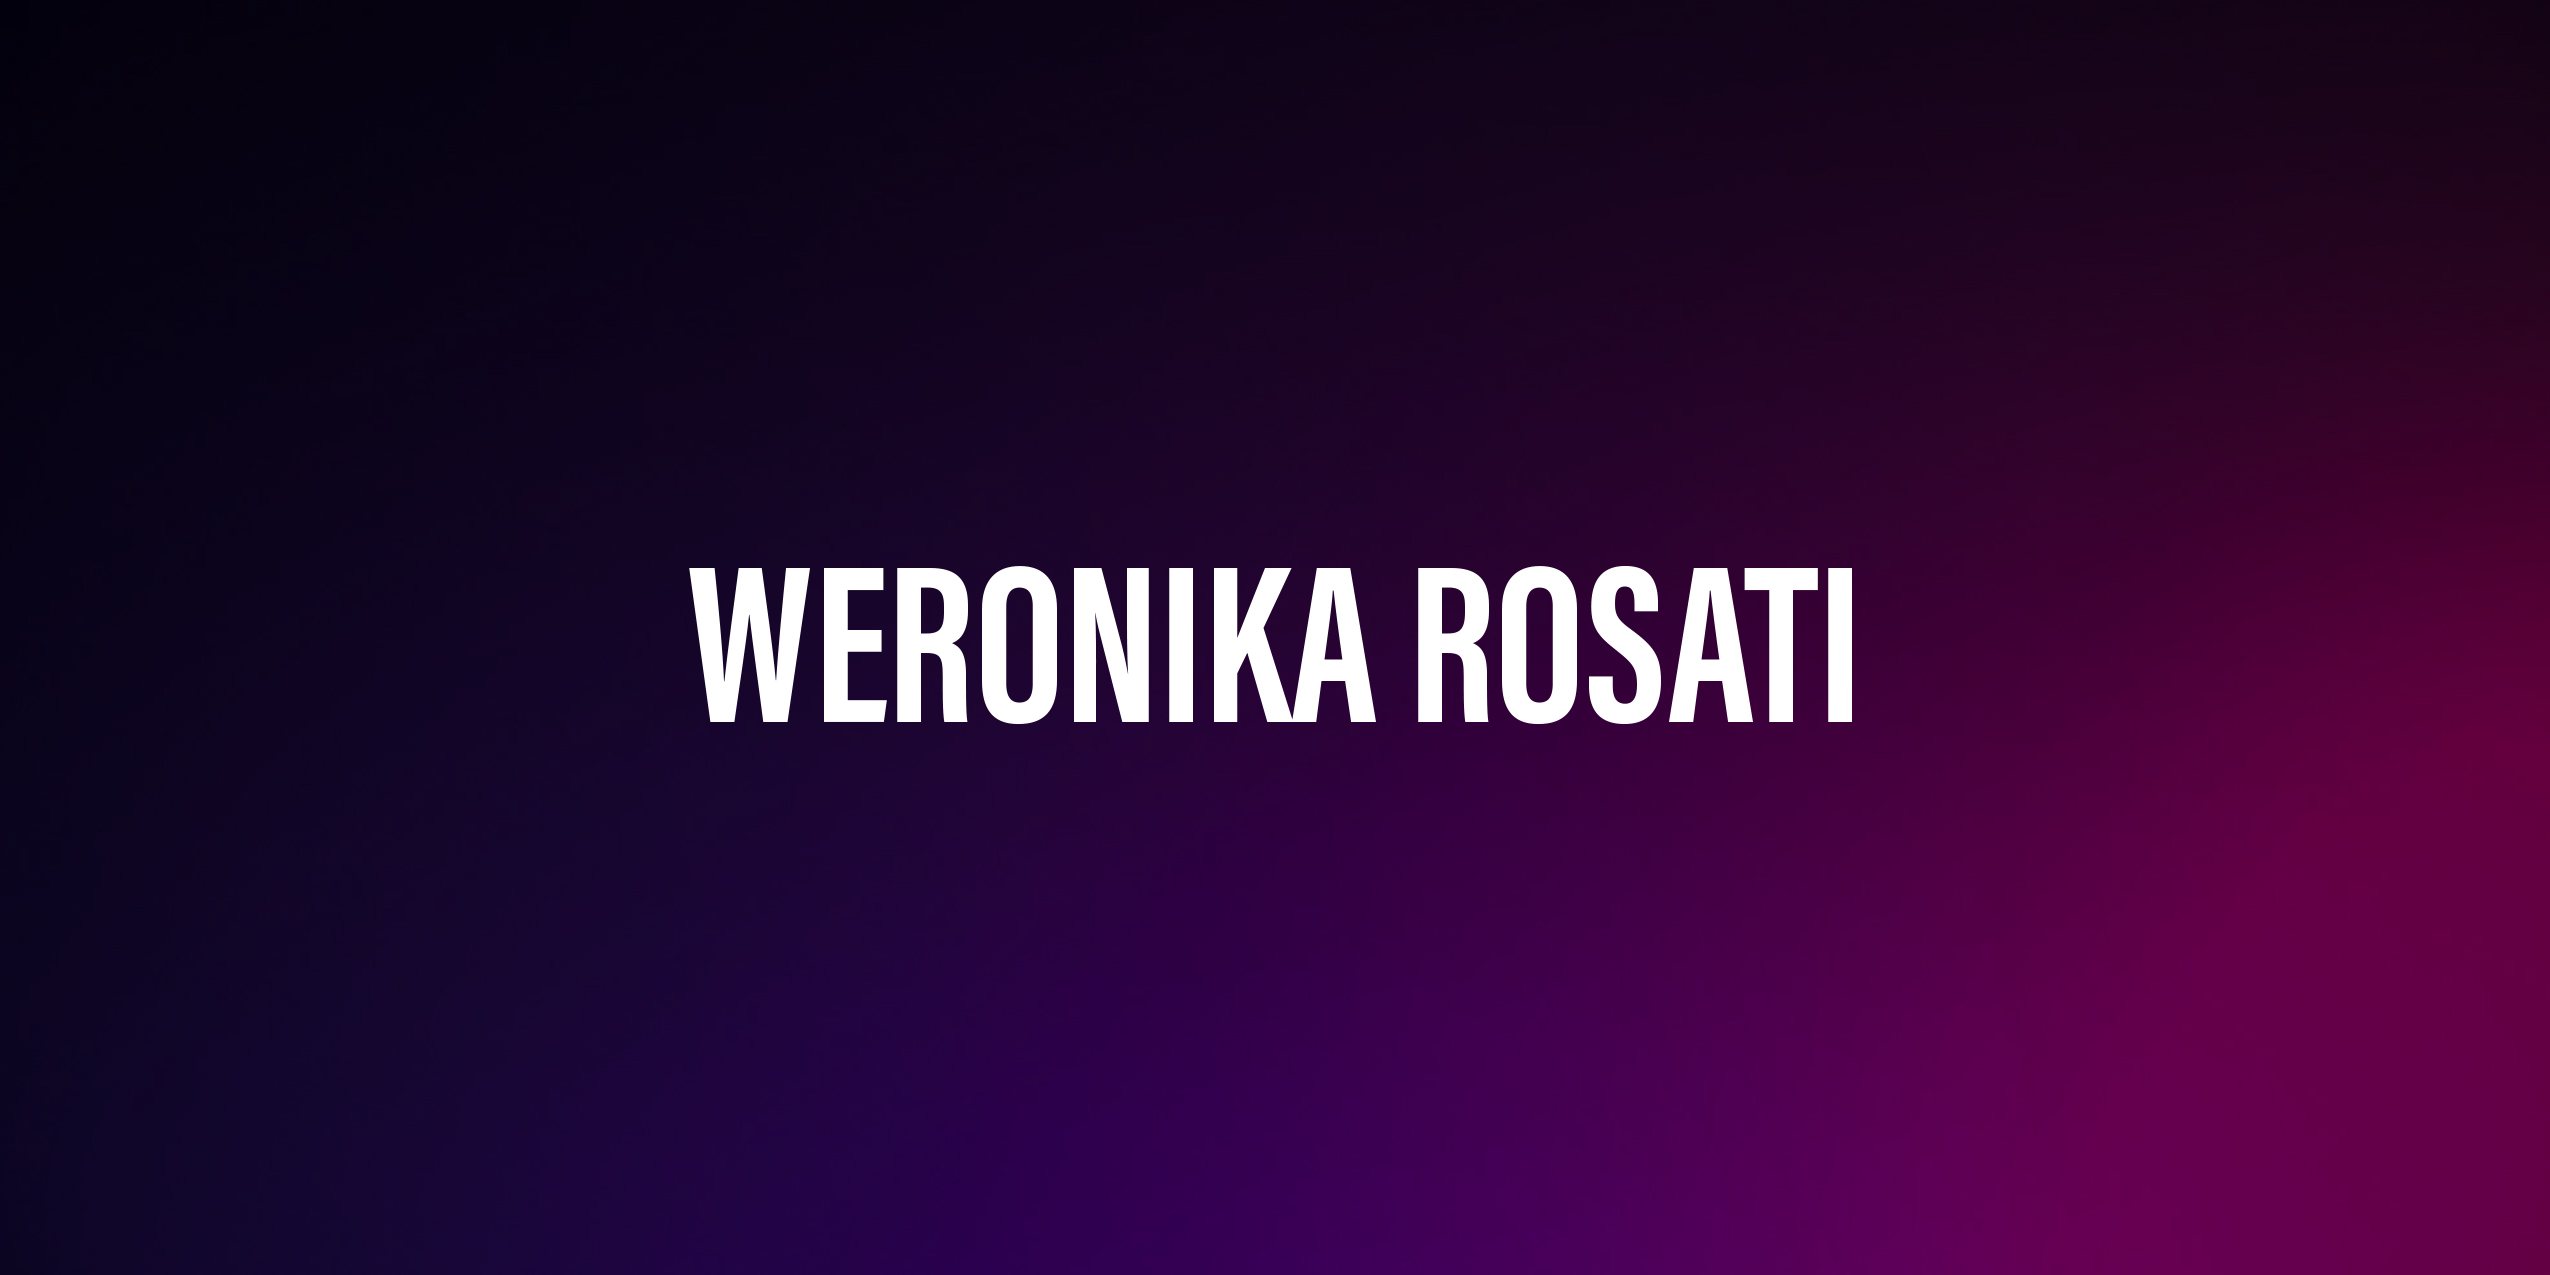 Weronika Rosati – życiorys i filmografia